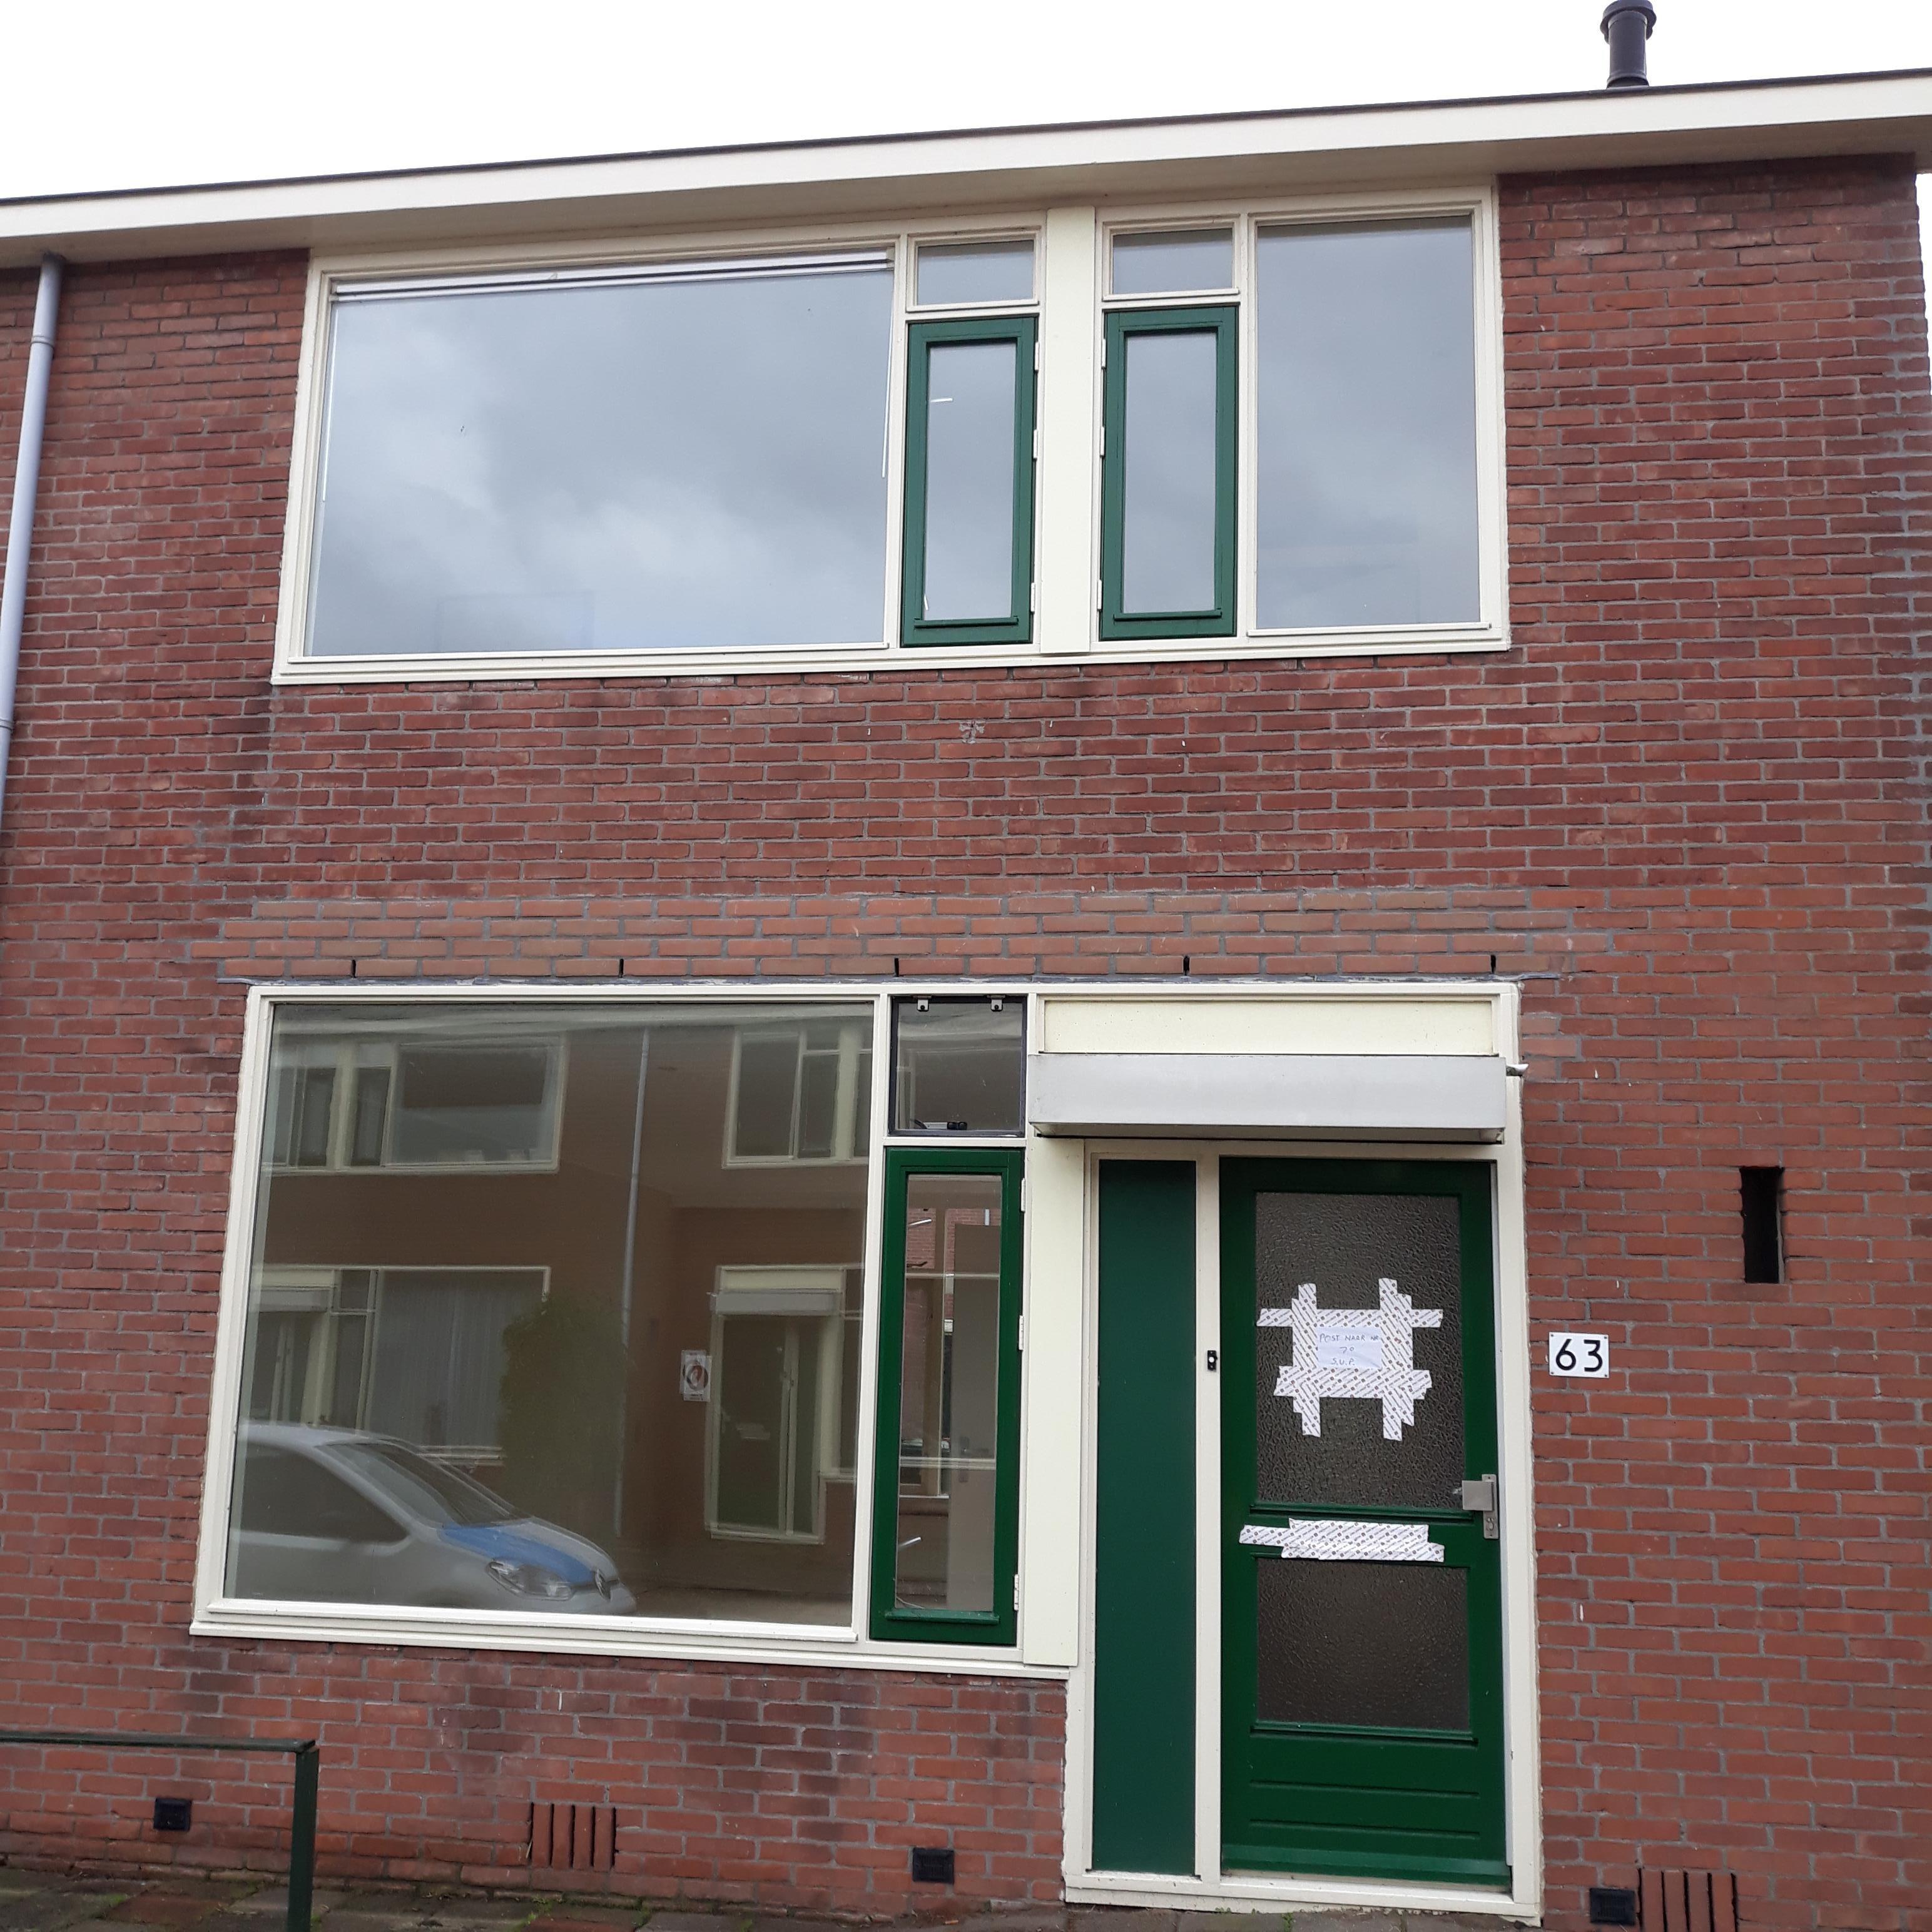 Lenaert Vechelstraat 63, 3232 BK Brielle, Nederland